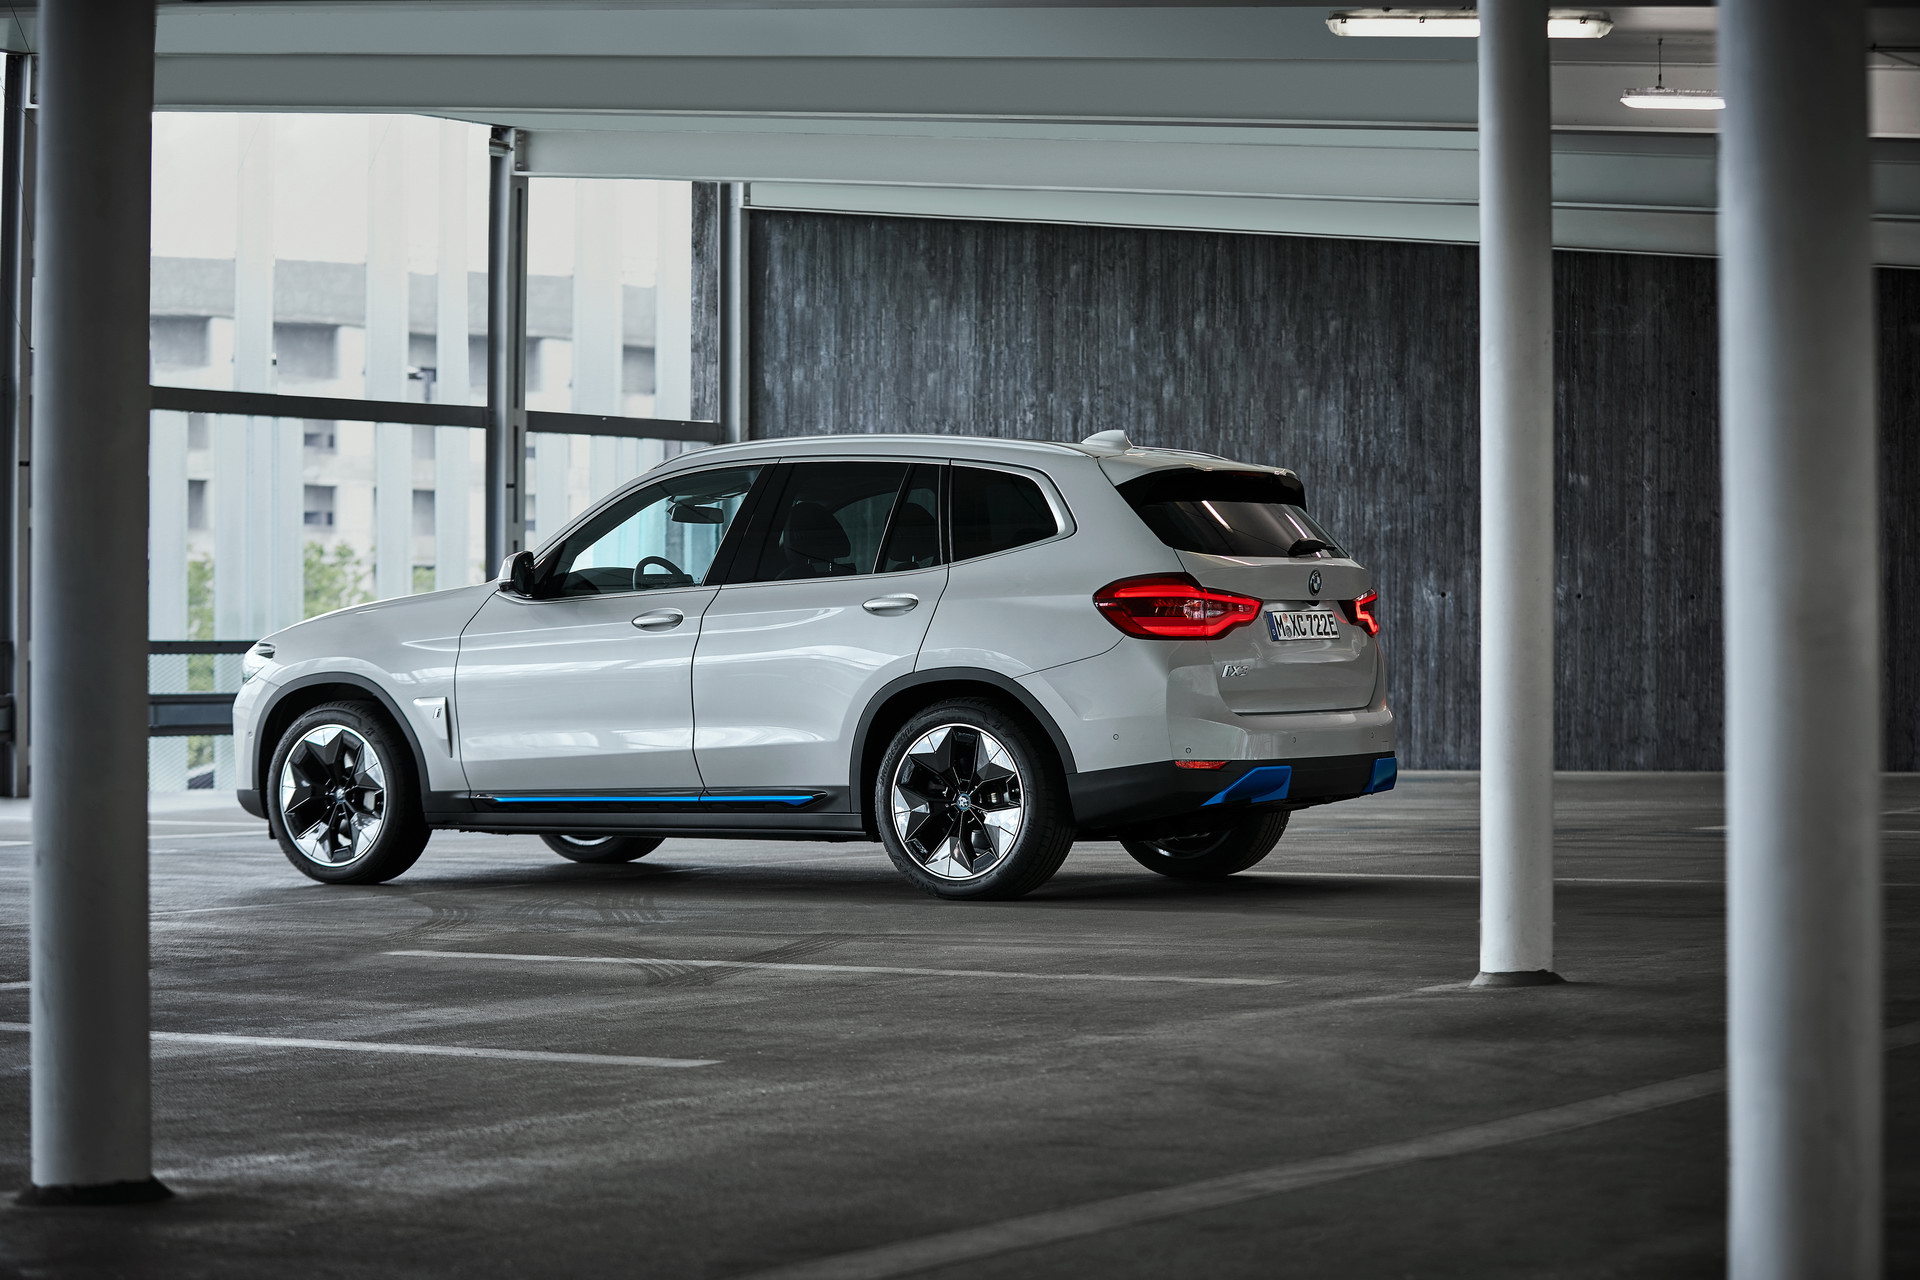 BMW iX3 Electric SUV 2021 bắt đầu nhận đặt hàng ảnh 2